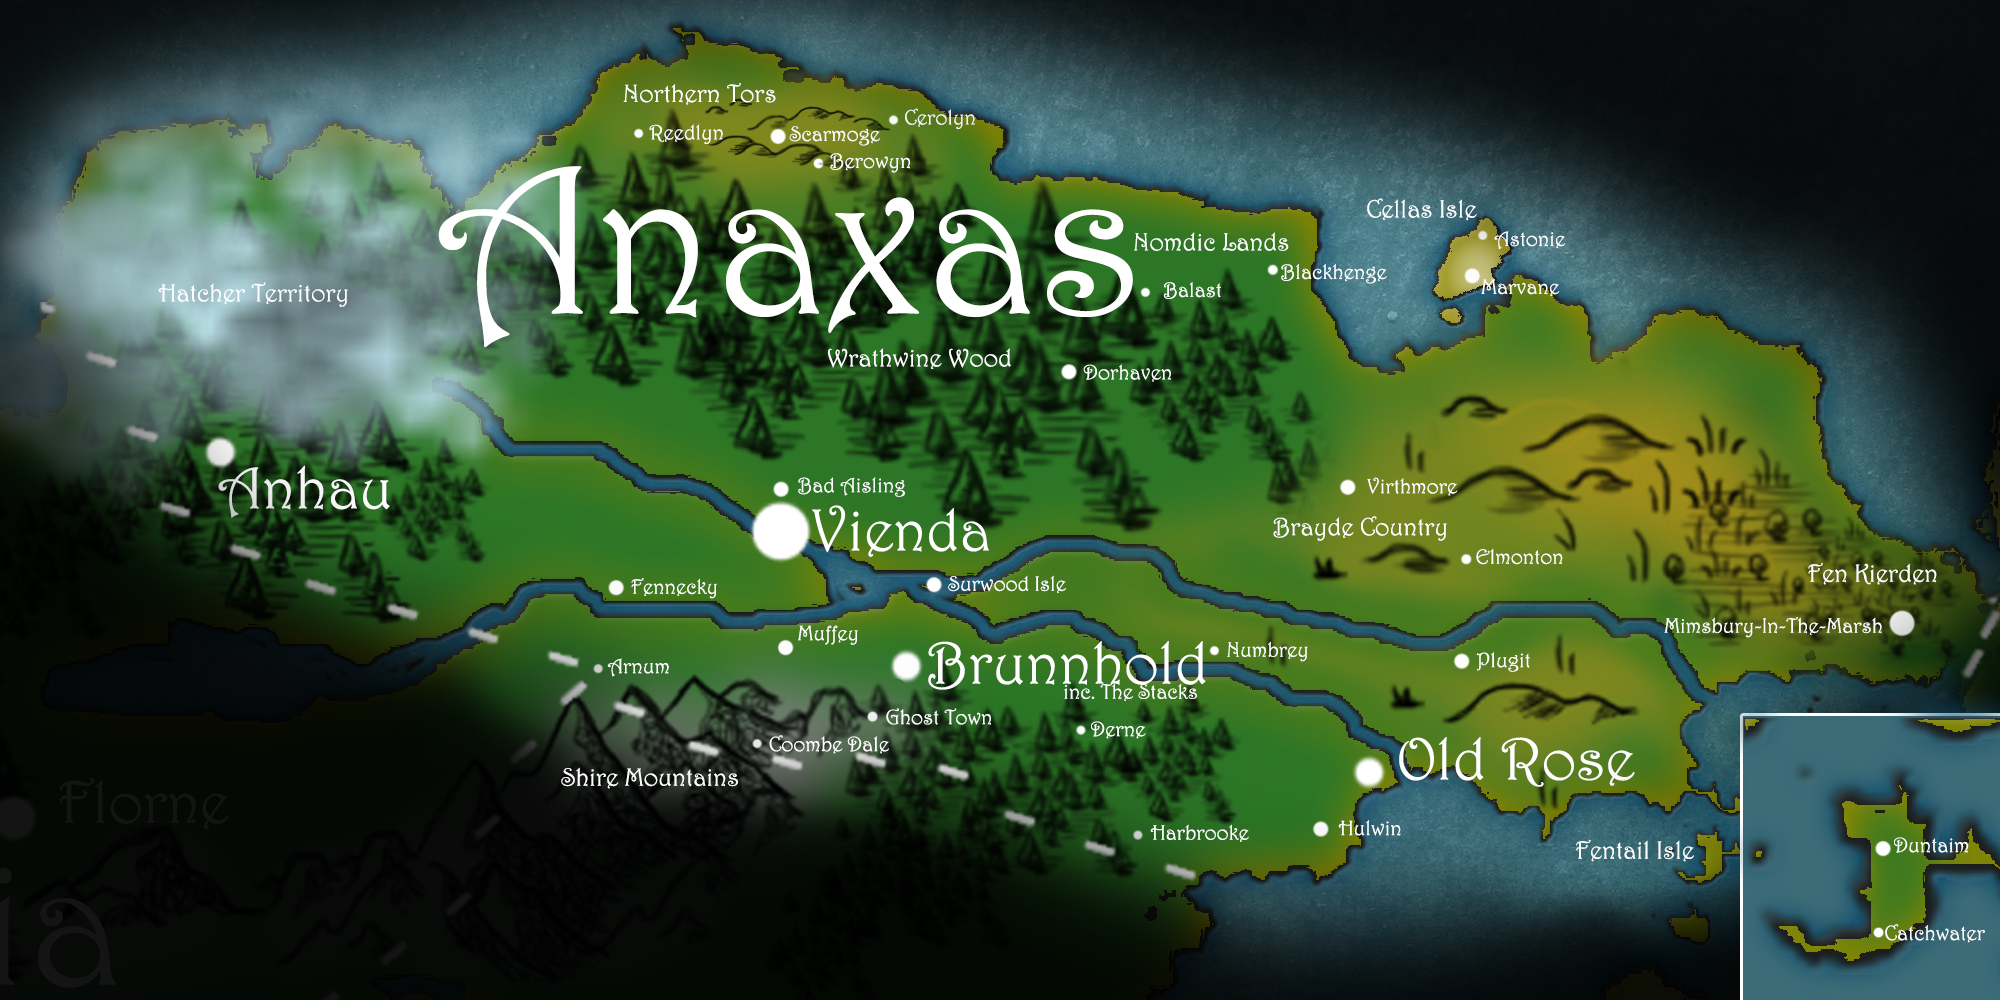 Anaxas-map-full-sized.jpg